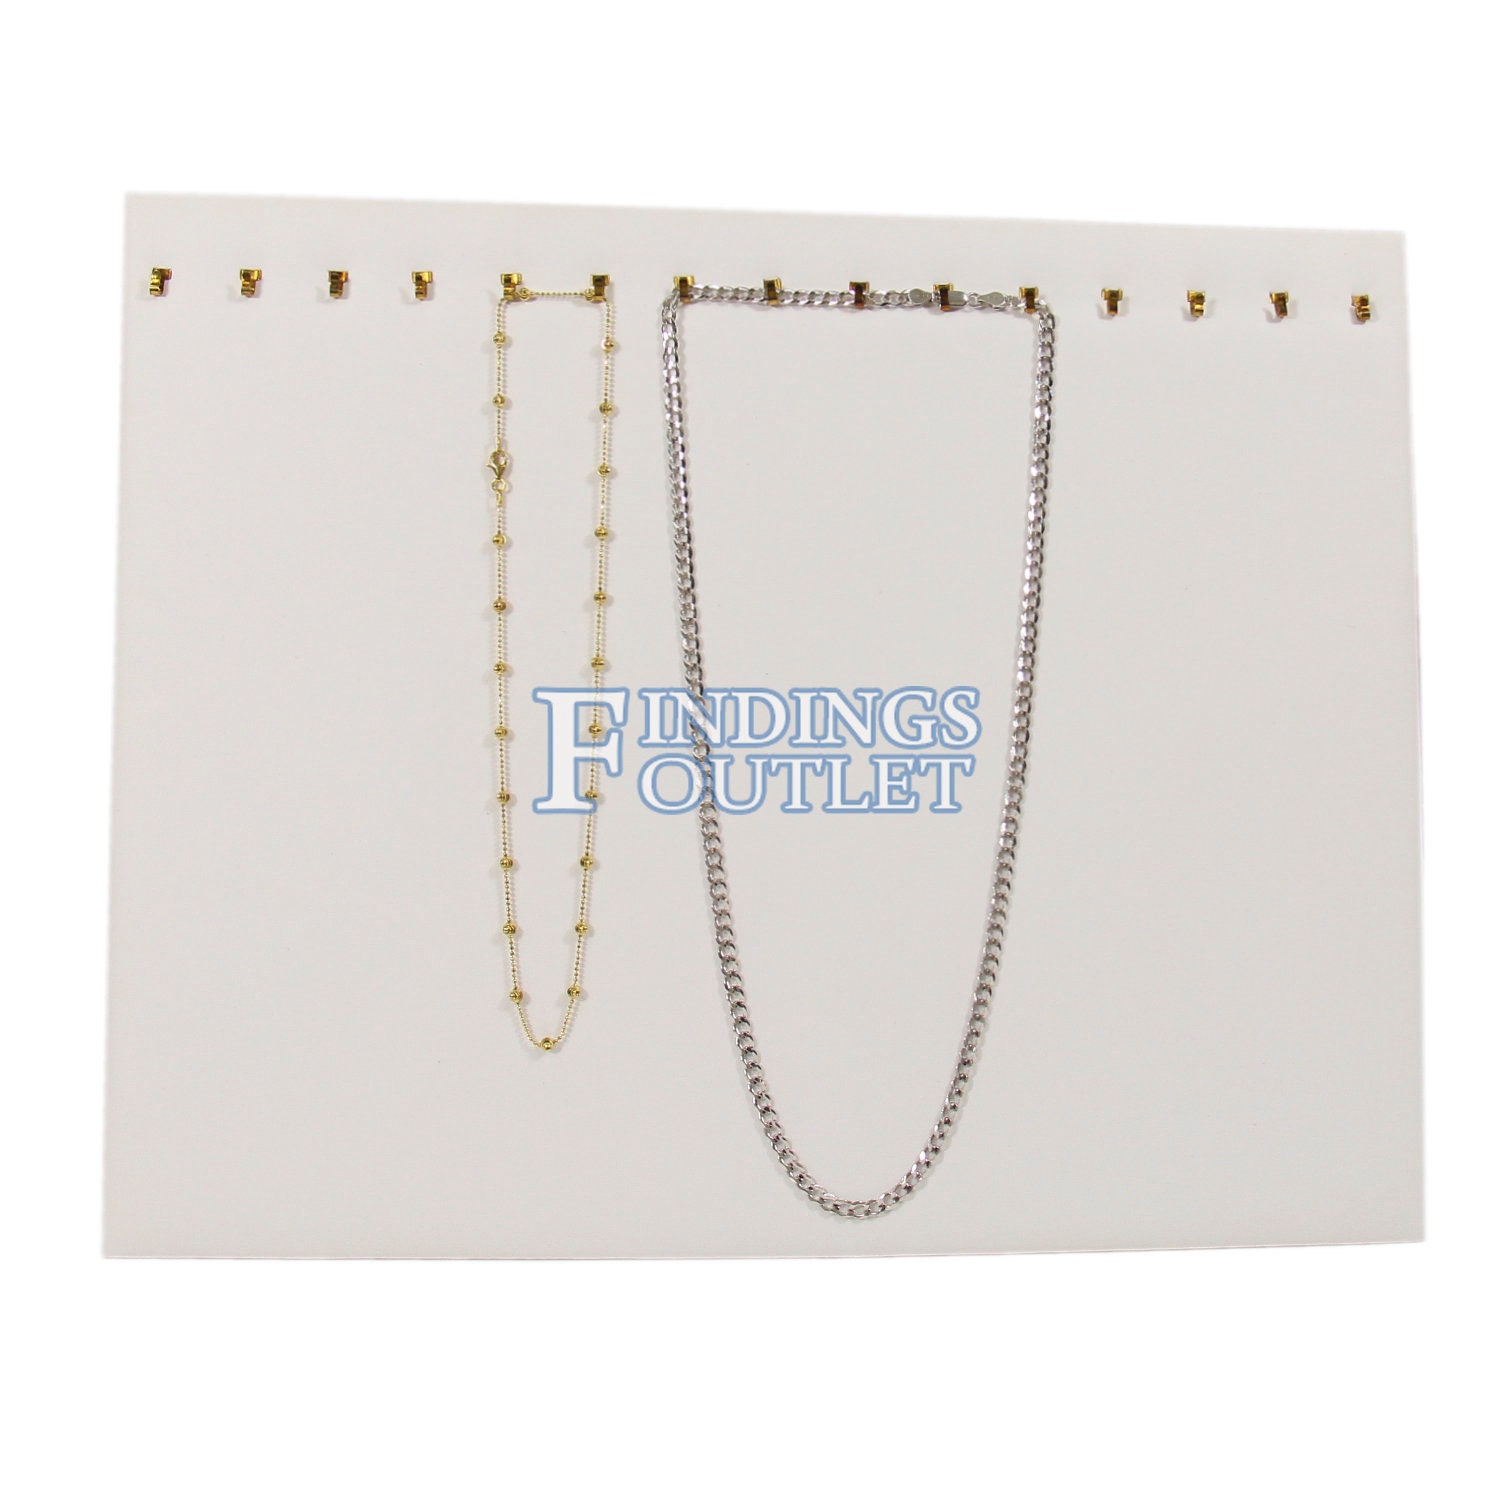 White Faux Leather 21 Slot Bangle Jewelry Display Holder Bracelet Showcase  Tray